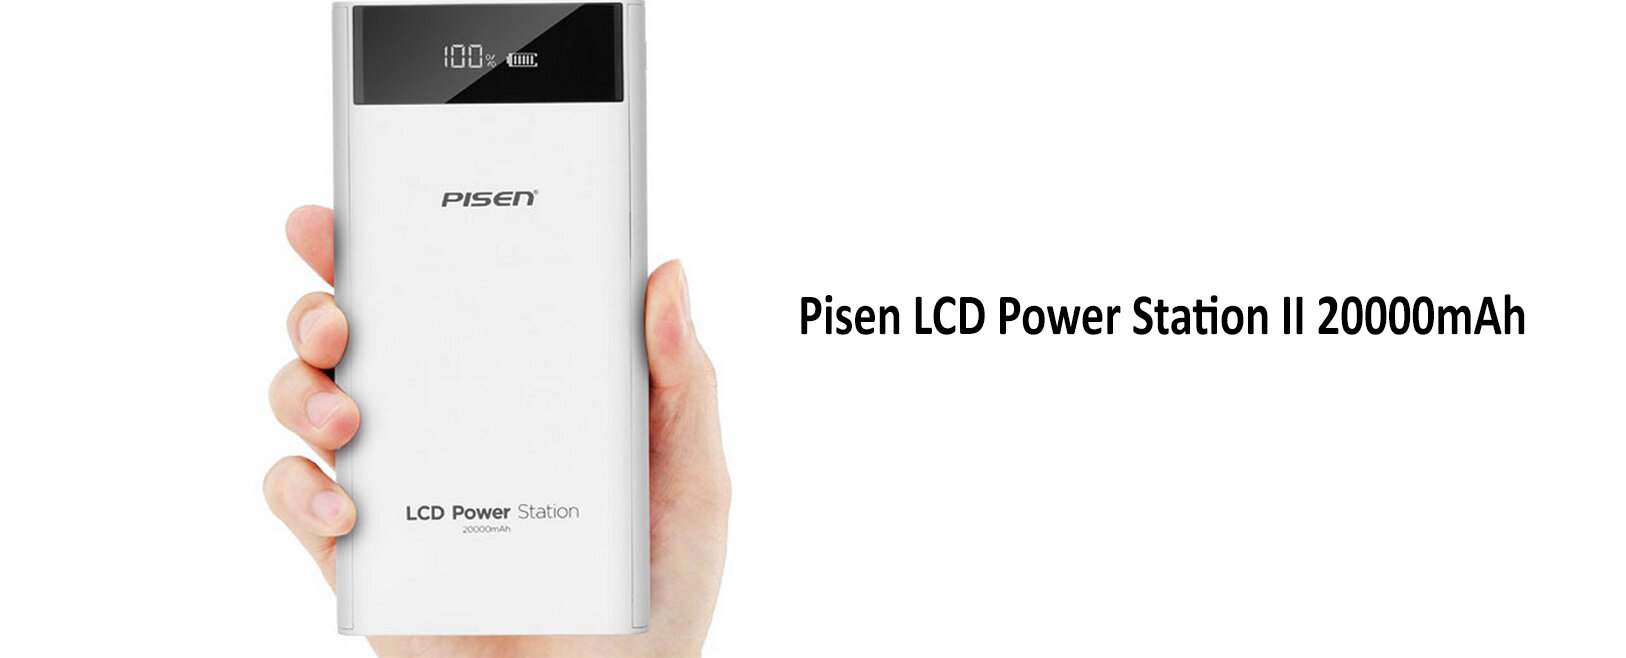 Pisen LCD Power Station II 20000mAh